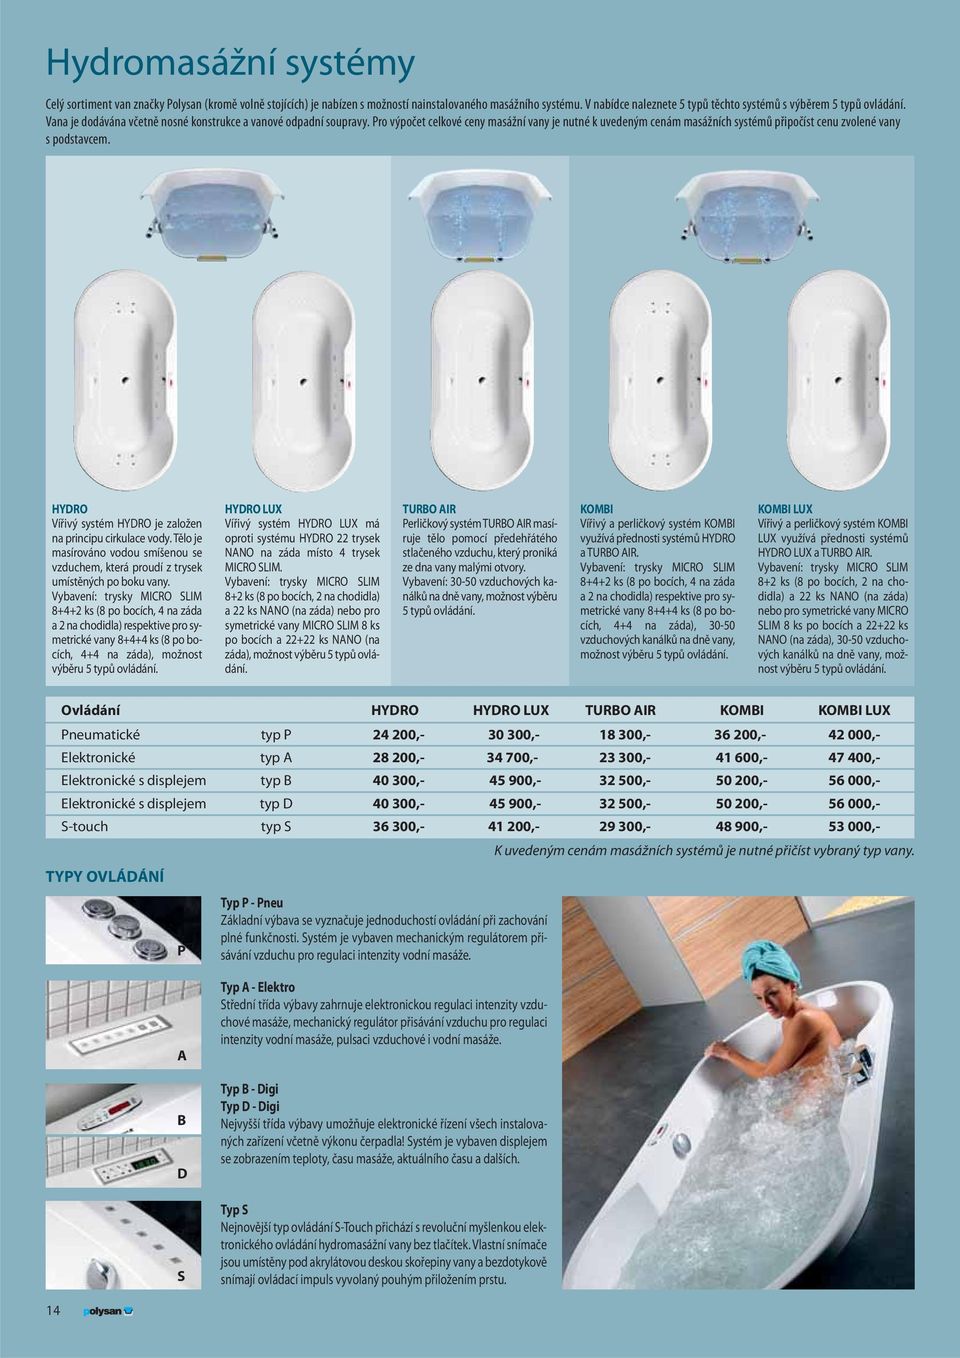 Pro výpočet celkové ceny masážní vany je nutné k uvedeným cenám masážních systémů připočíst cenu zvolené vany s podstavcem. HYDRO Vířivý systém HYDRO je založen na principu cirkulace vody.